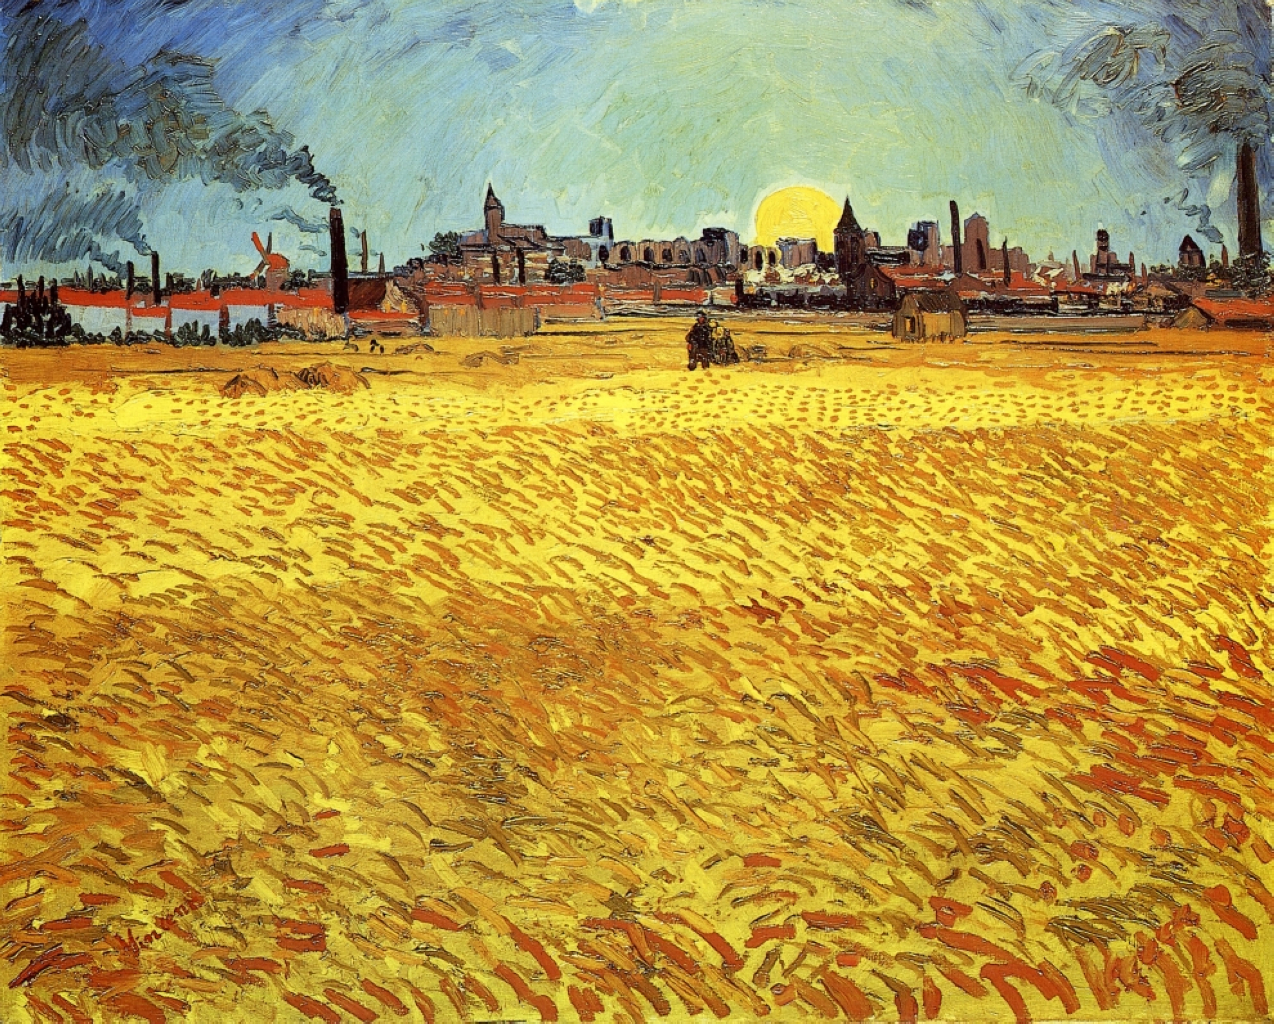 Noite de verão, campo de trigo com sol poente by Vincent van Gogh - 1888 - 188 x 231 cm 